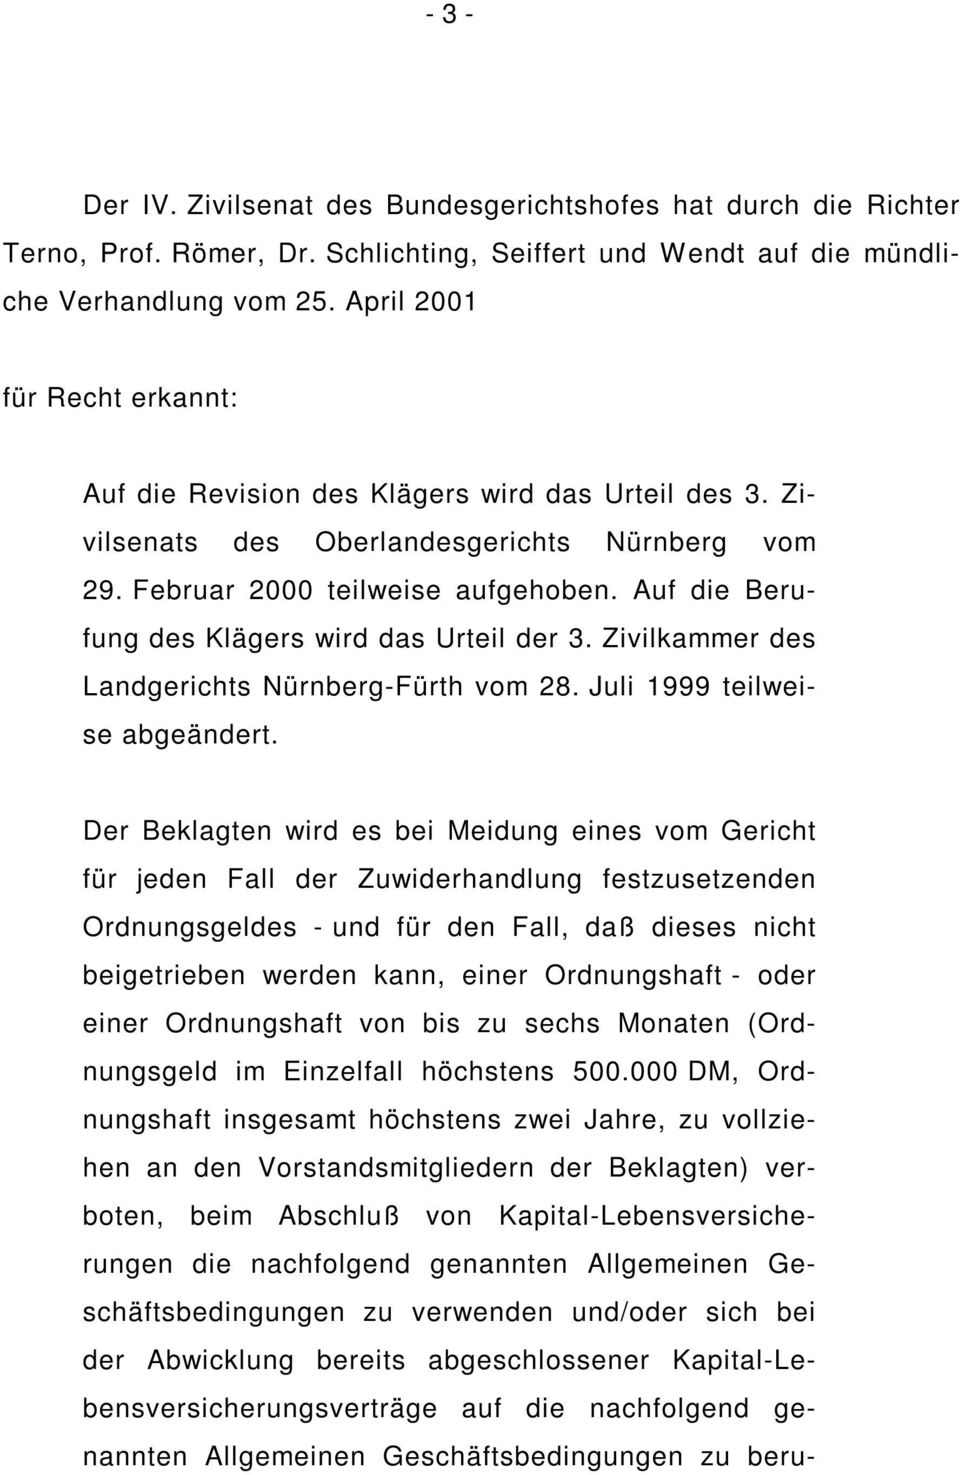 Auf die Berufung des Klägers wird das Urteil der 3. Zivilkammer des Landgerichts Nürnberg-Fürth vom 28. Juli 1999 teilweise abgeändert.